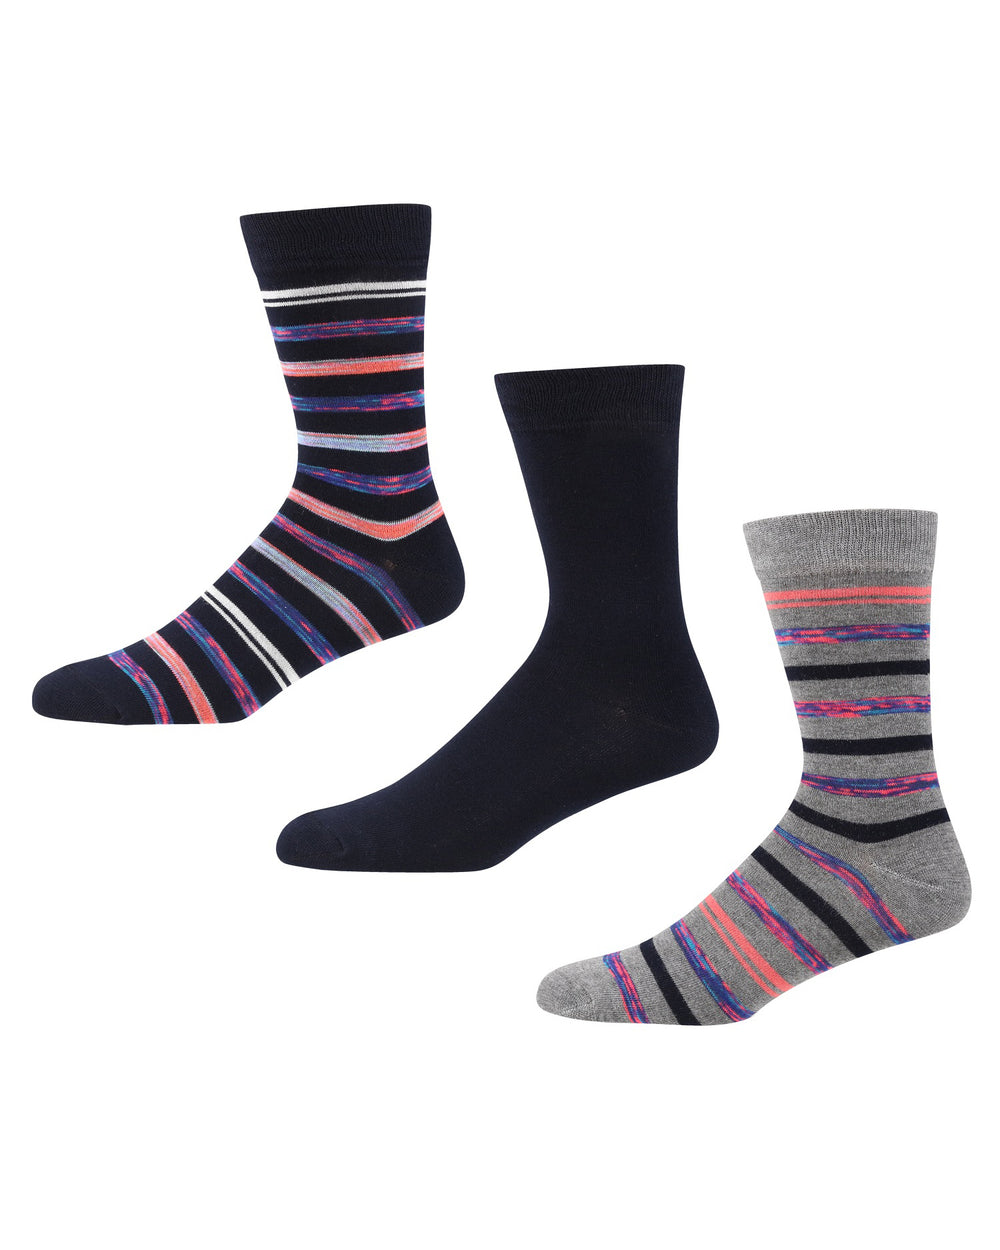 Kneller Men's 3-Pack Socks - Grey Marl/Navy Stripe